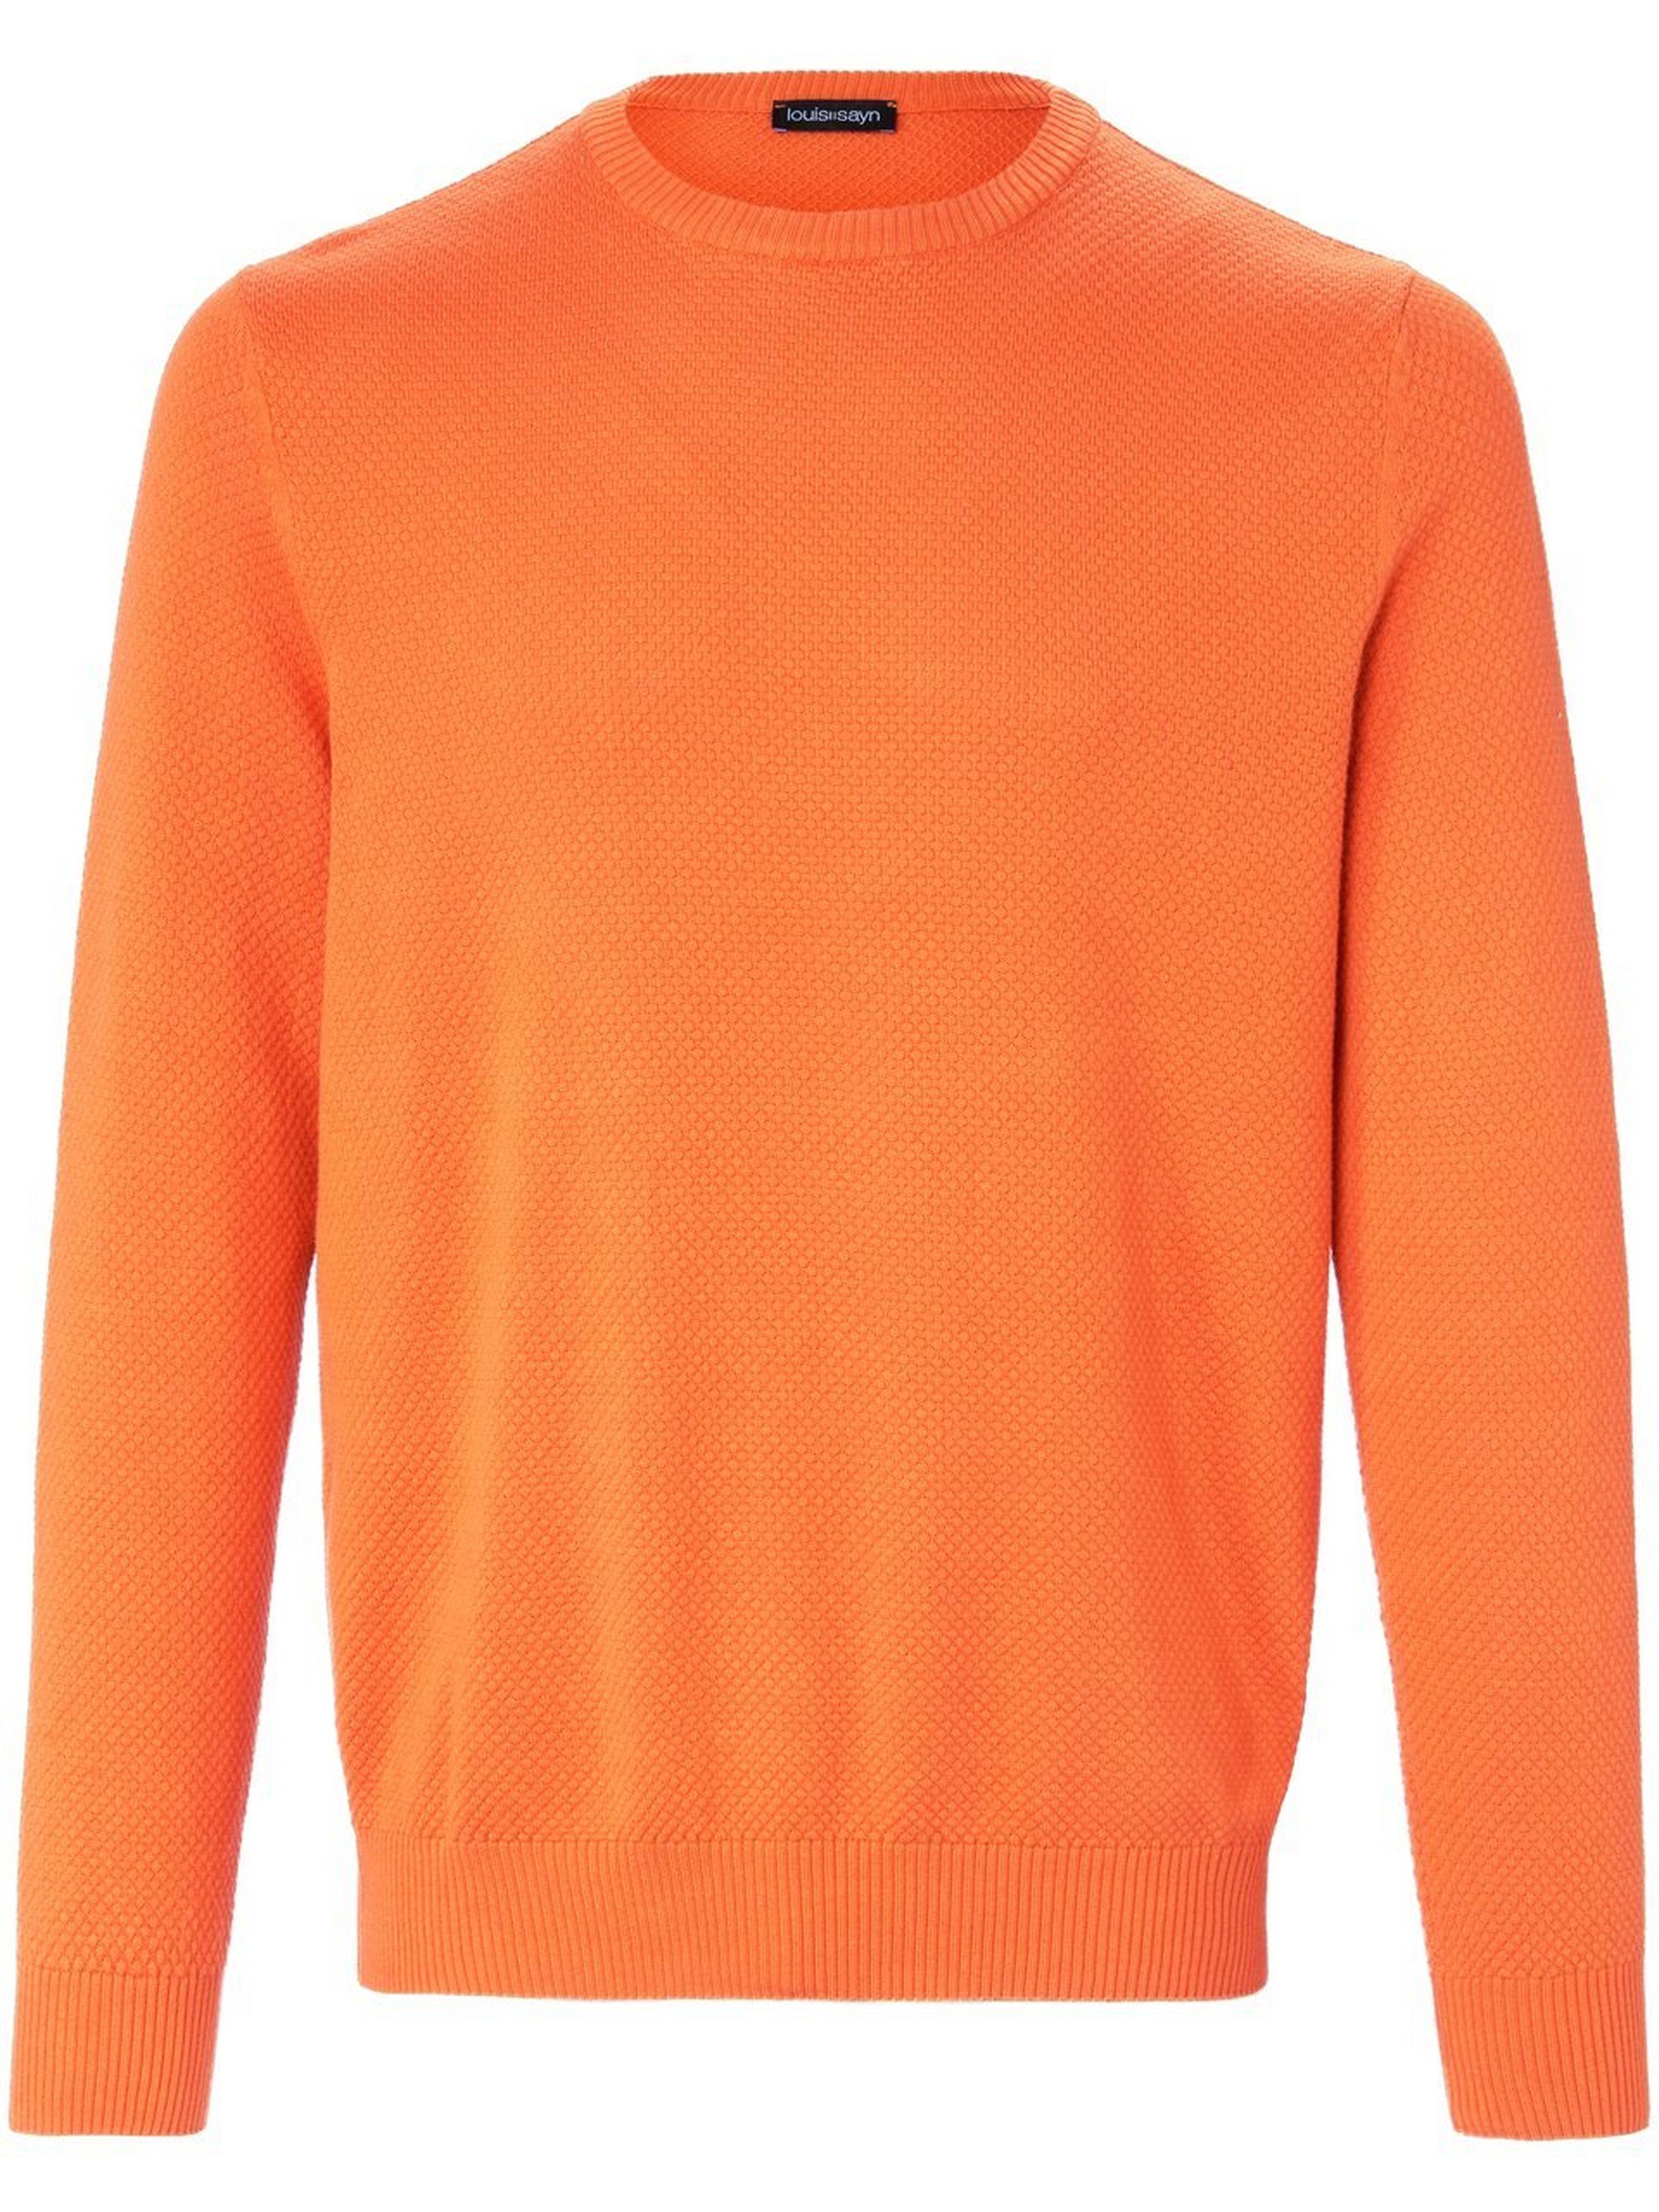 Louis Sayn Rundhals-Pullover aus 100% Baumwolle Pima Cotton Louis Sayn orange Herren 56